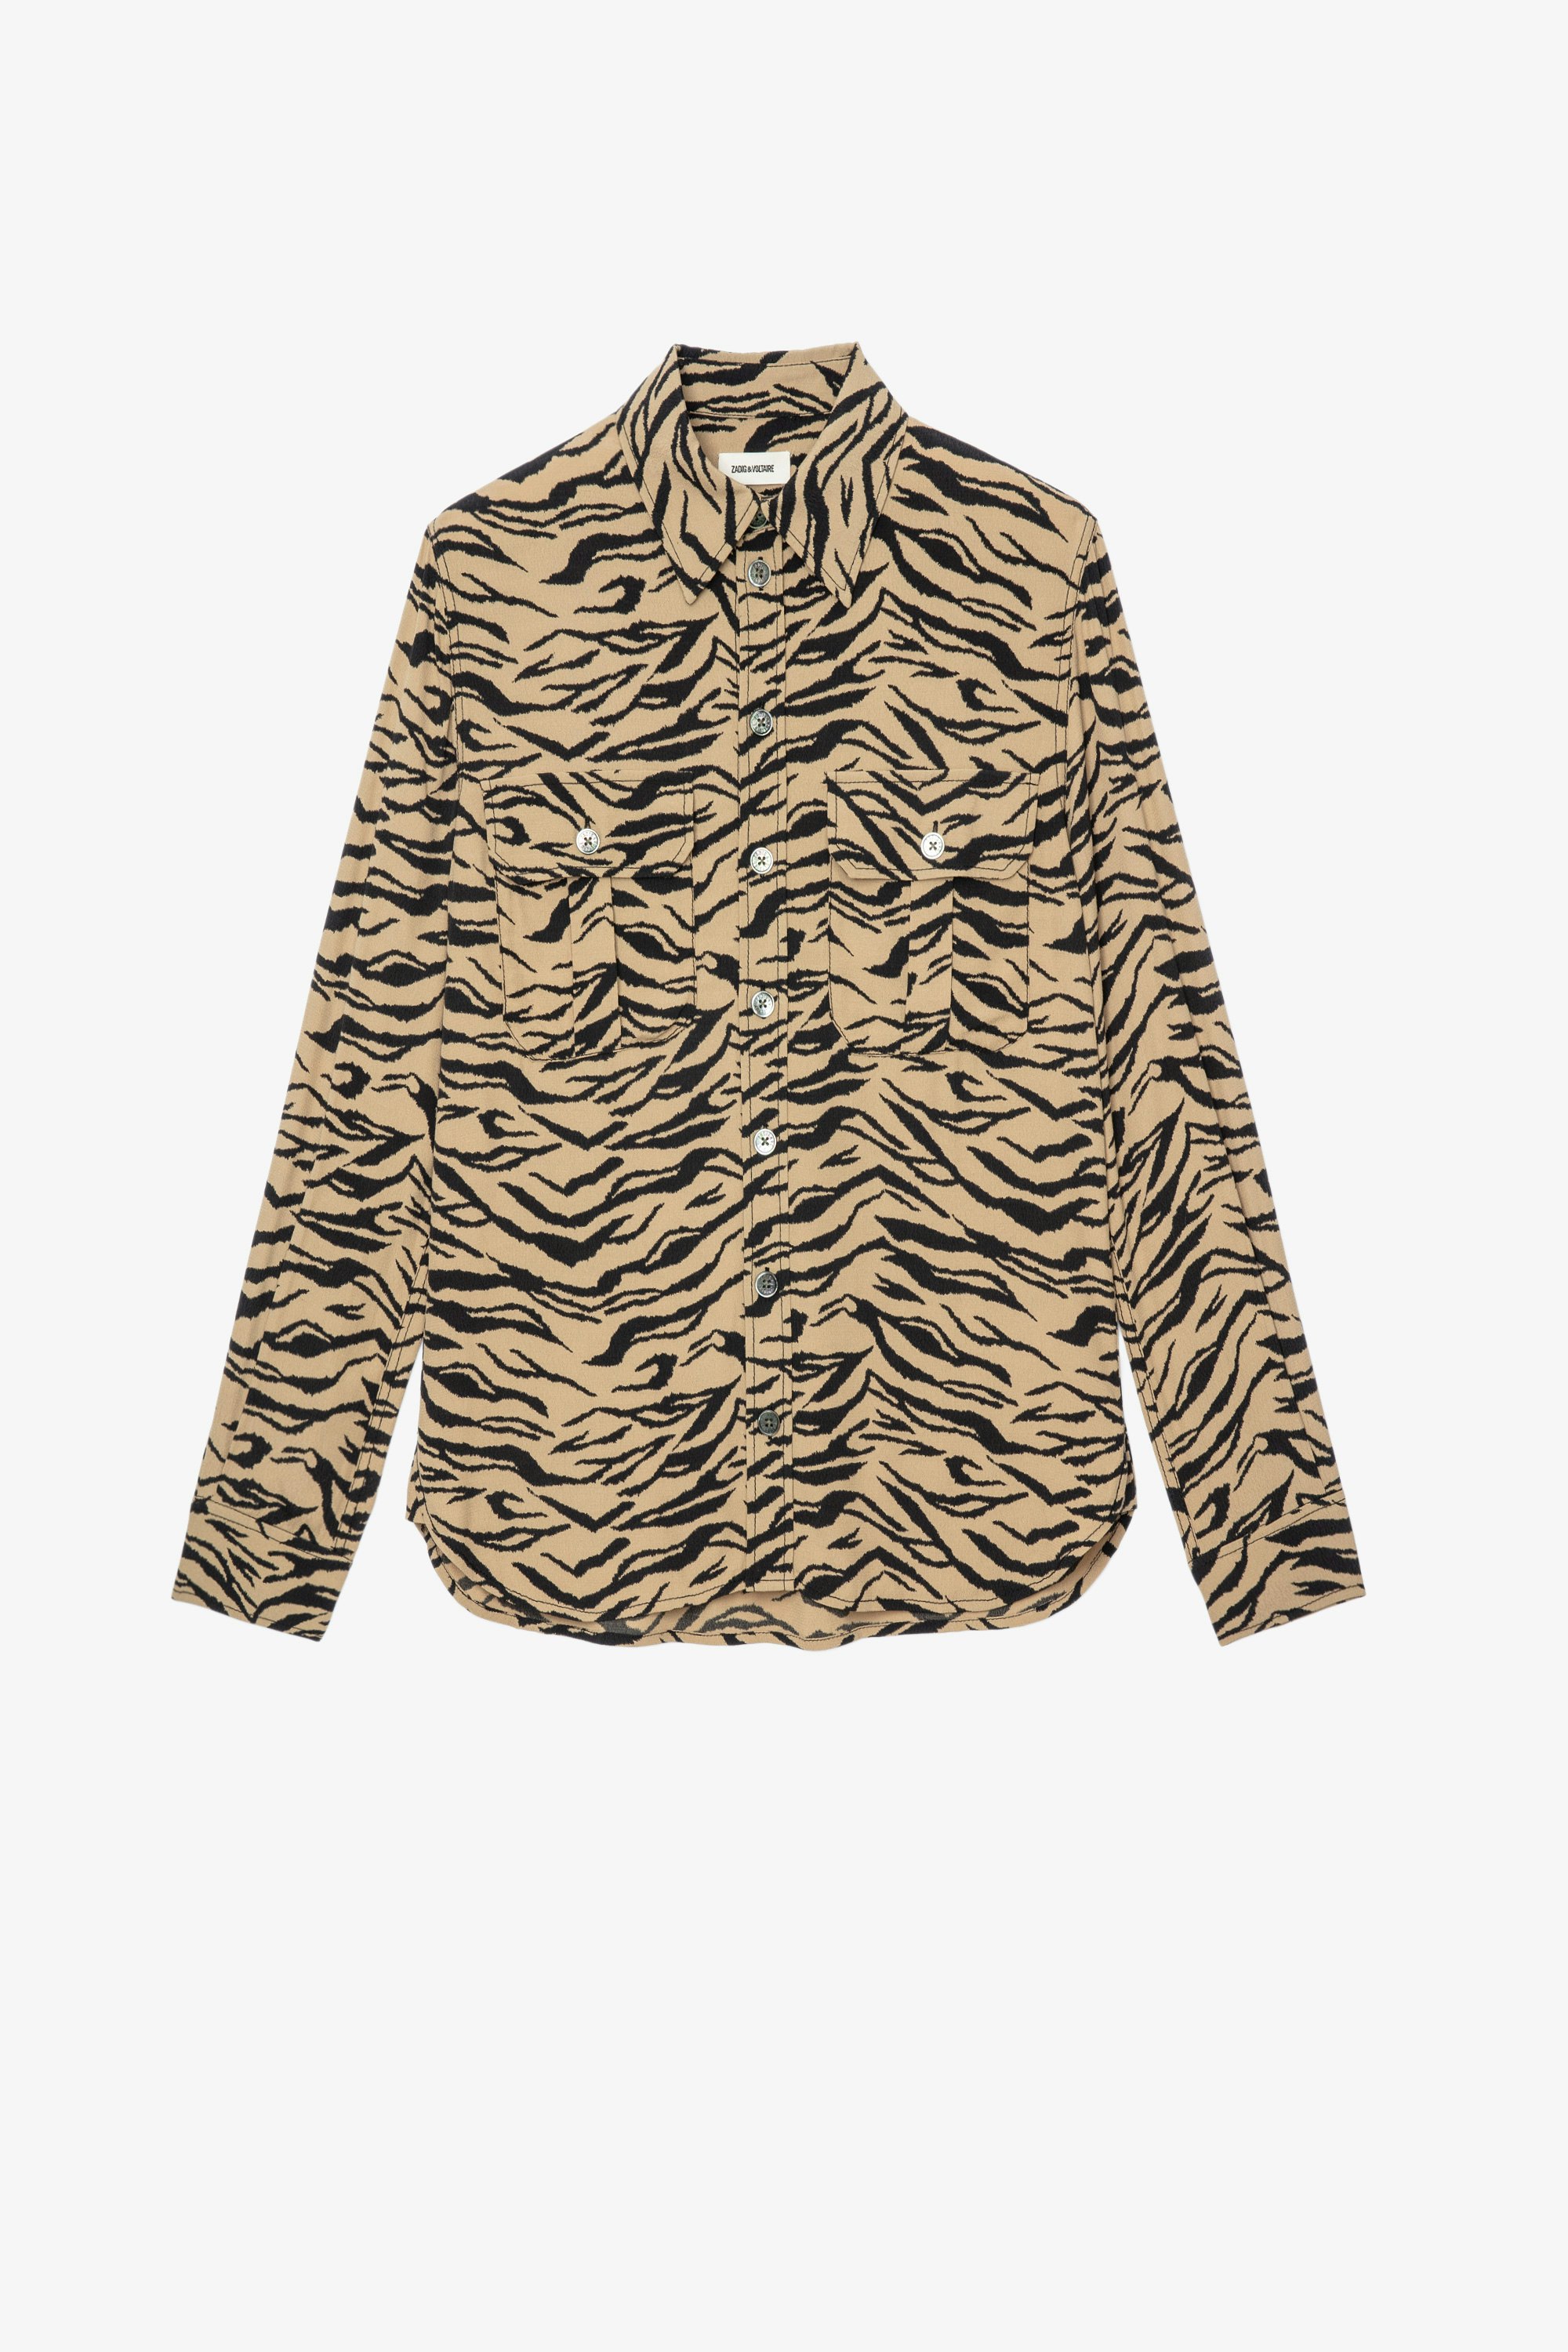 Camisa con estampado de tigre Teros Camisa abotonada con estampado de tigre Naturel para mujer 